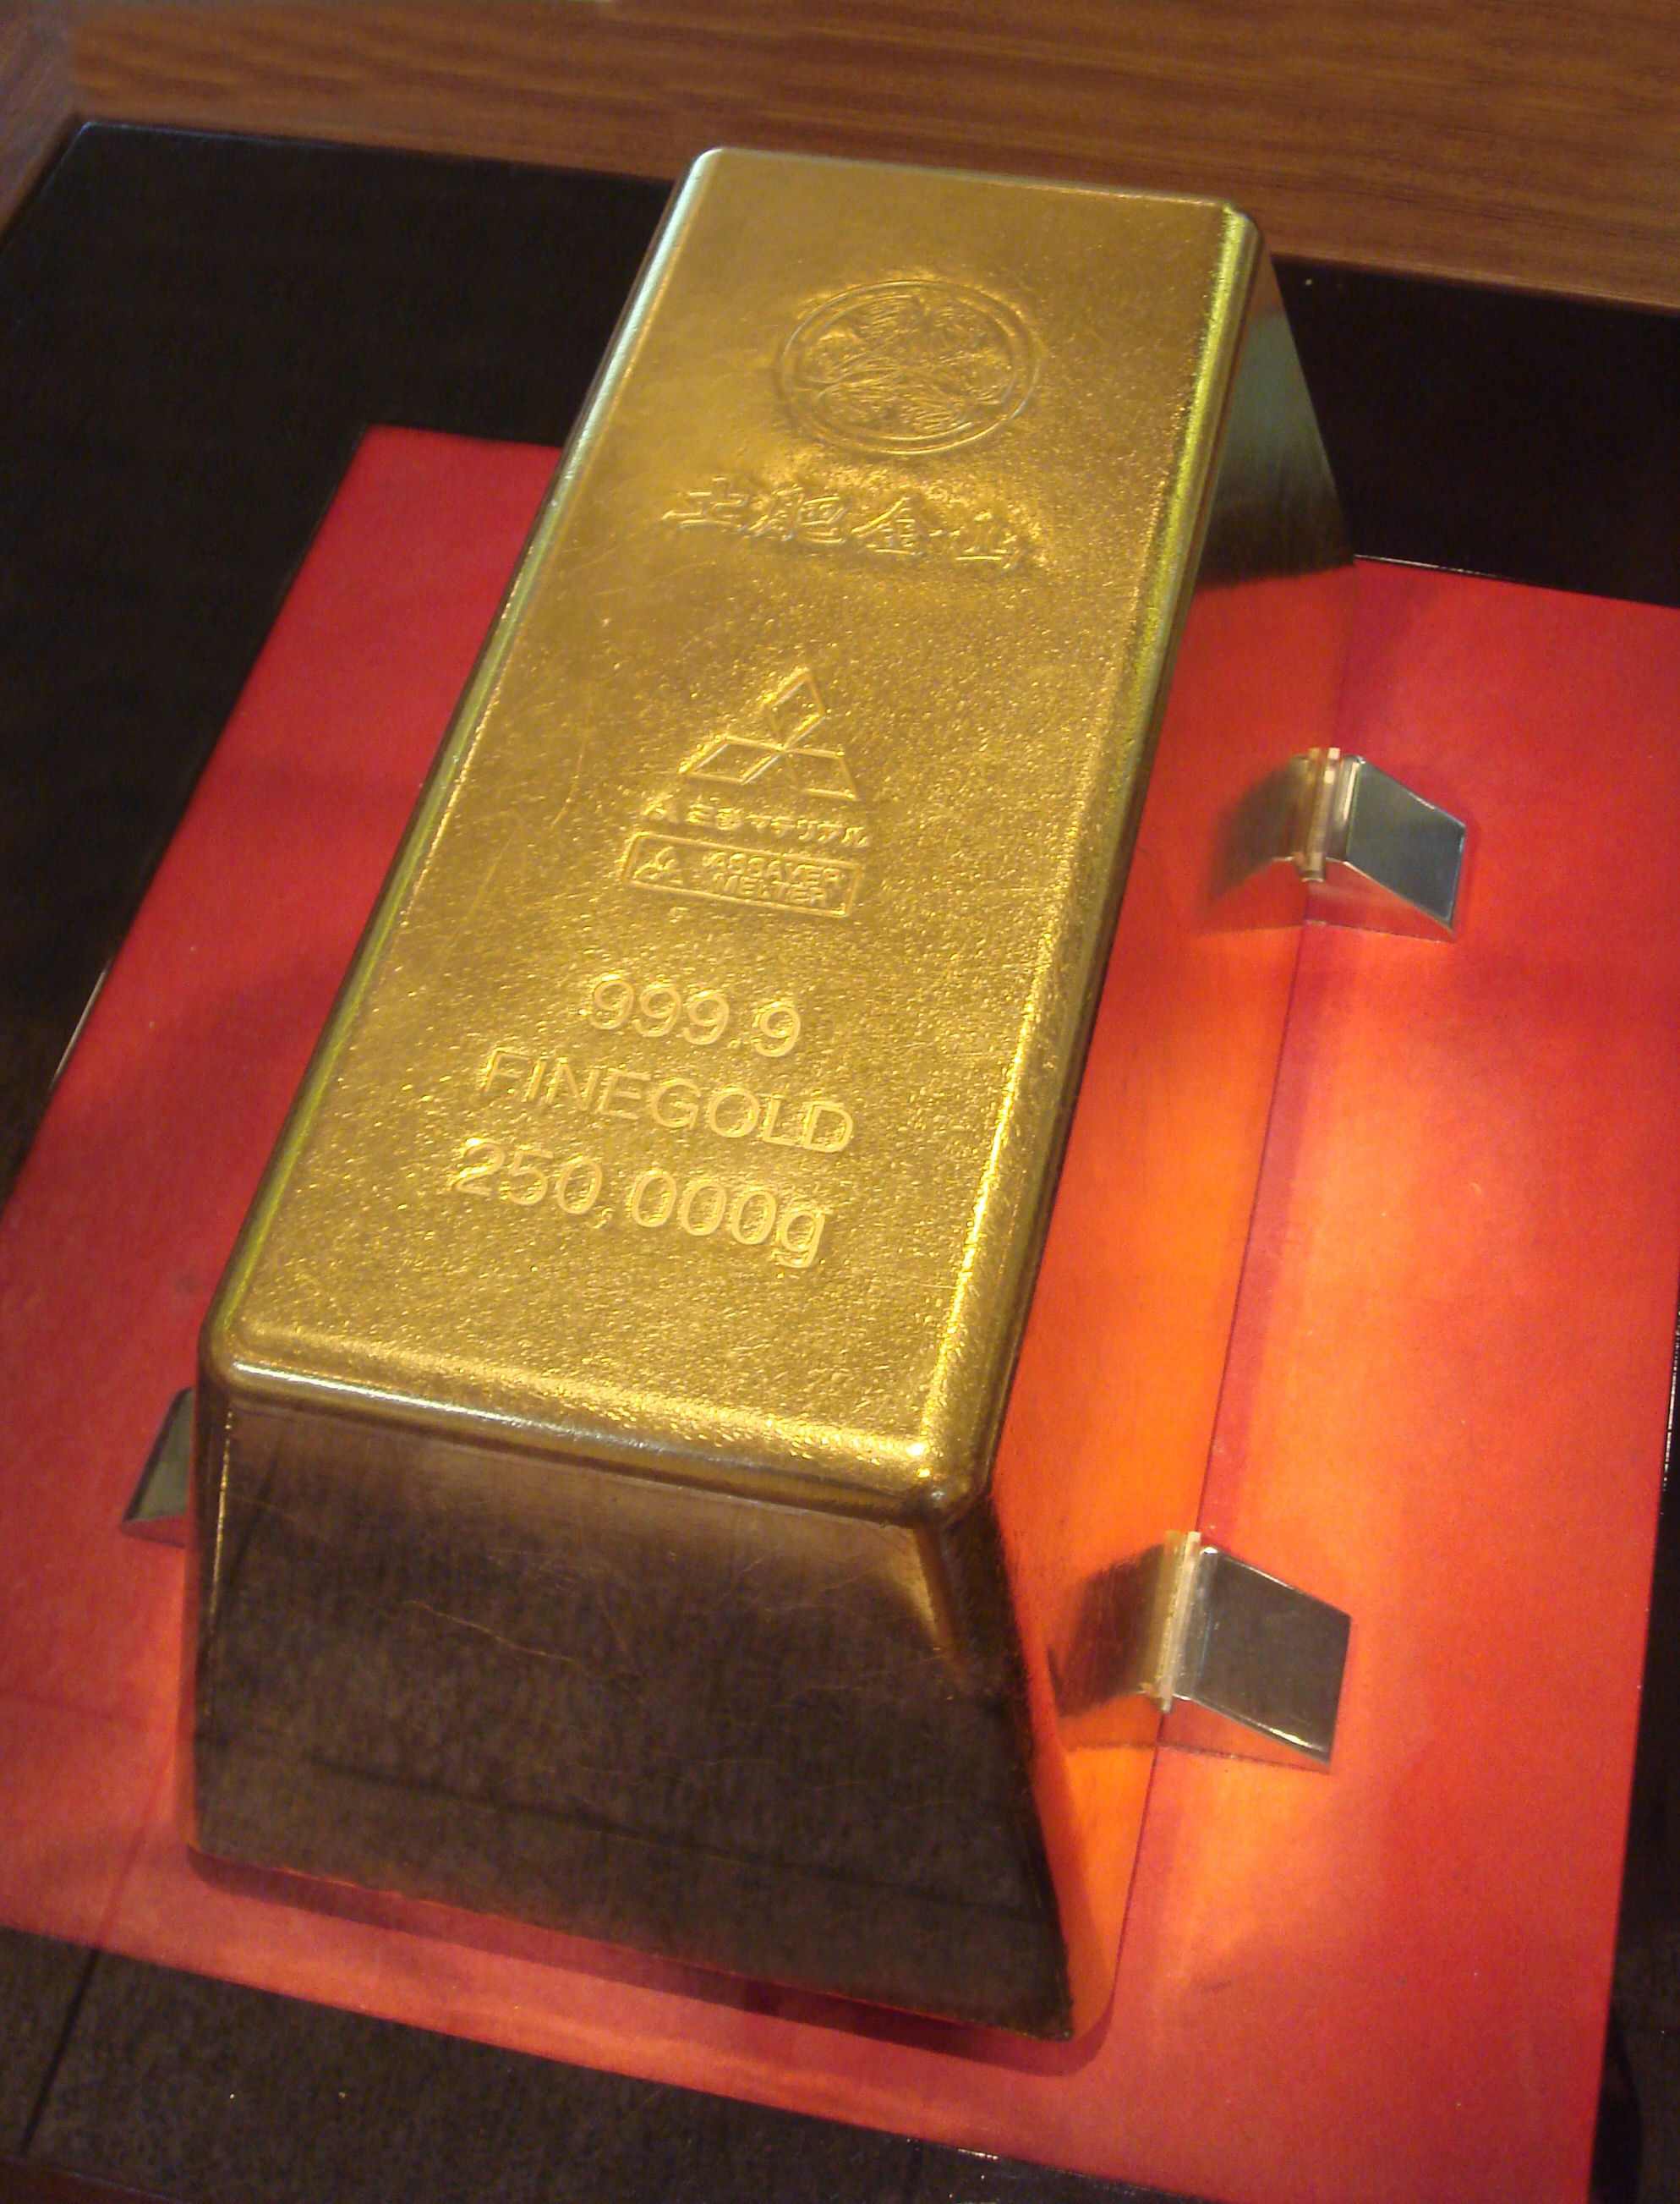 A világ legnagyobb aranytömbjét a Mitsubishi Materials Corporation állította elő. Az aranytöm a Toi aranybánya gyűjteményében lett kiállítva 2005-ben.